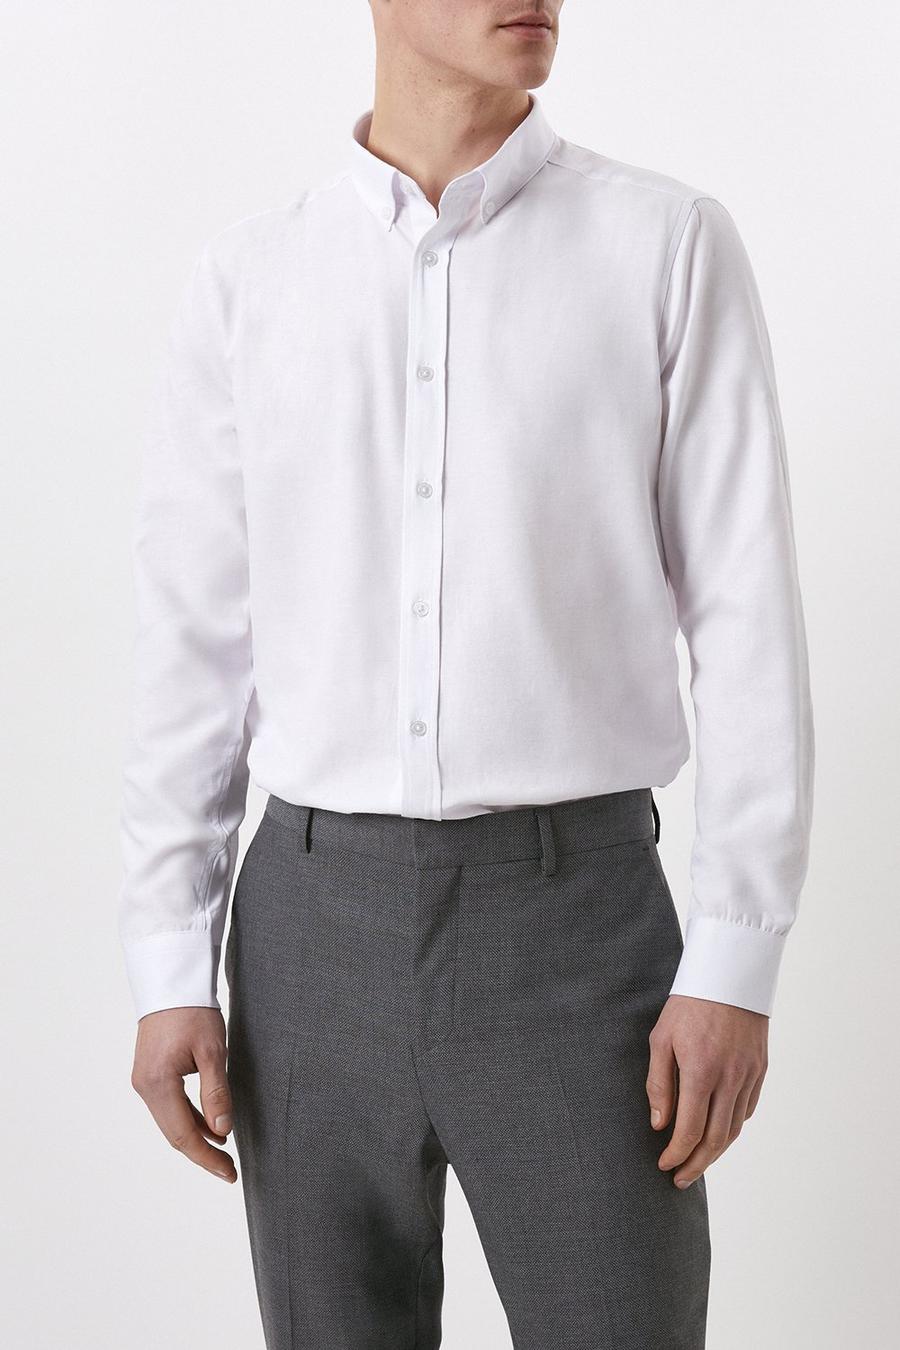 Regular Fit Long Sleeve Oxford Shirt